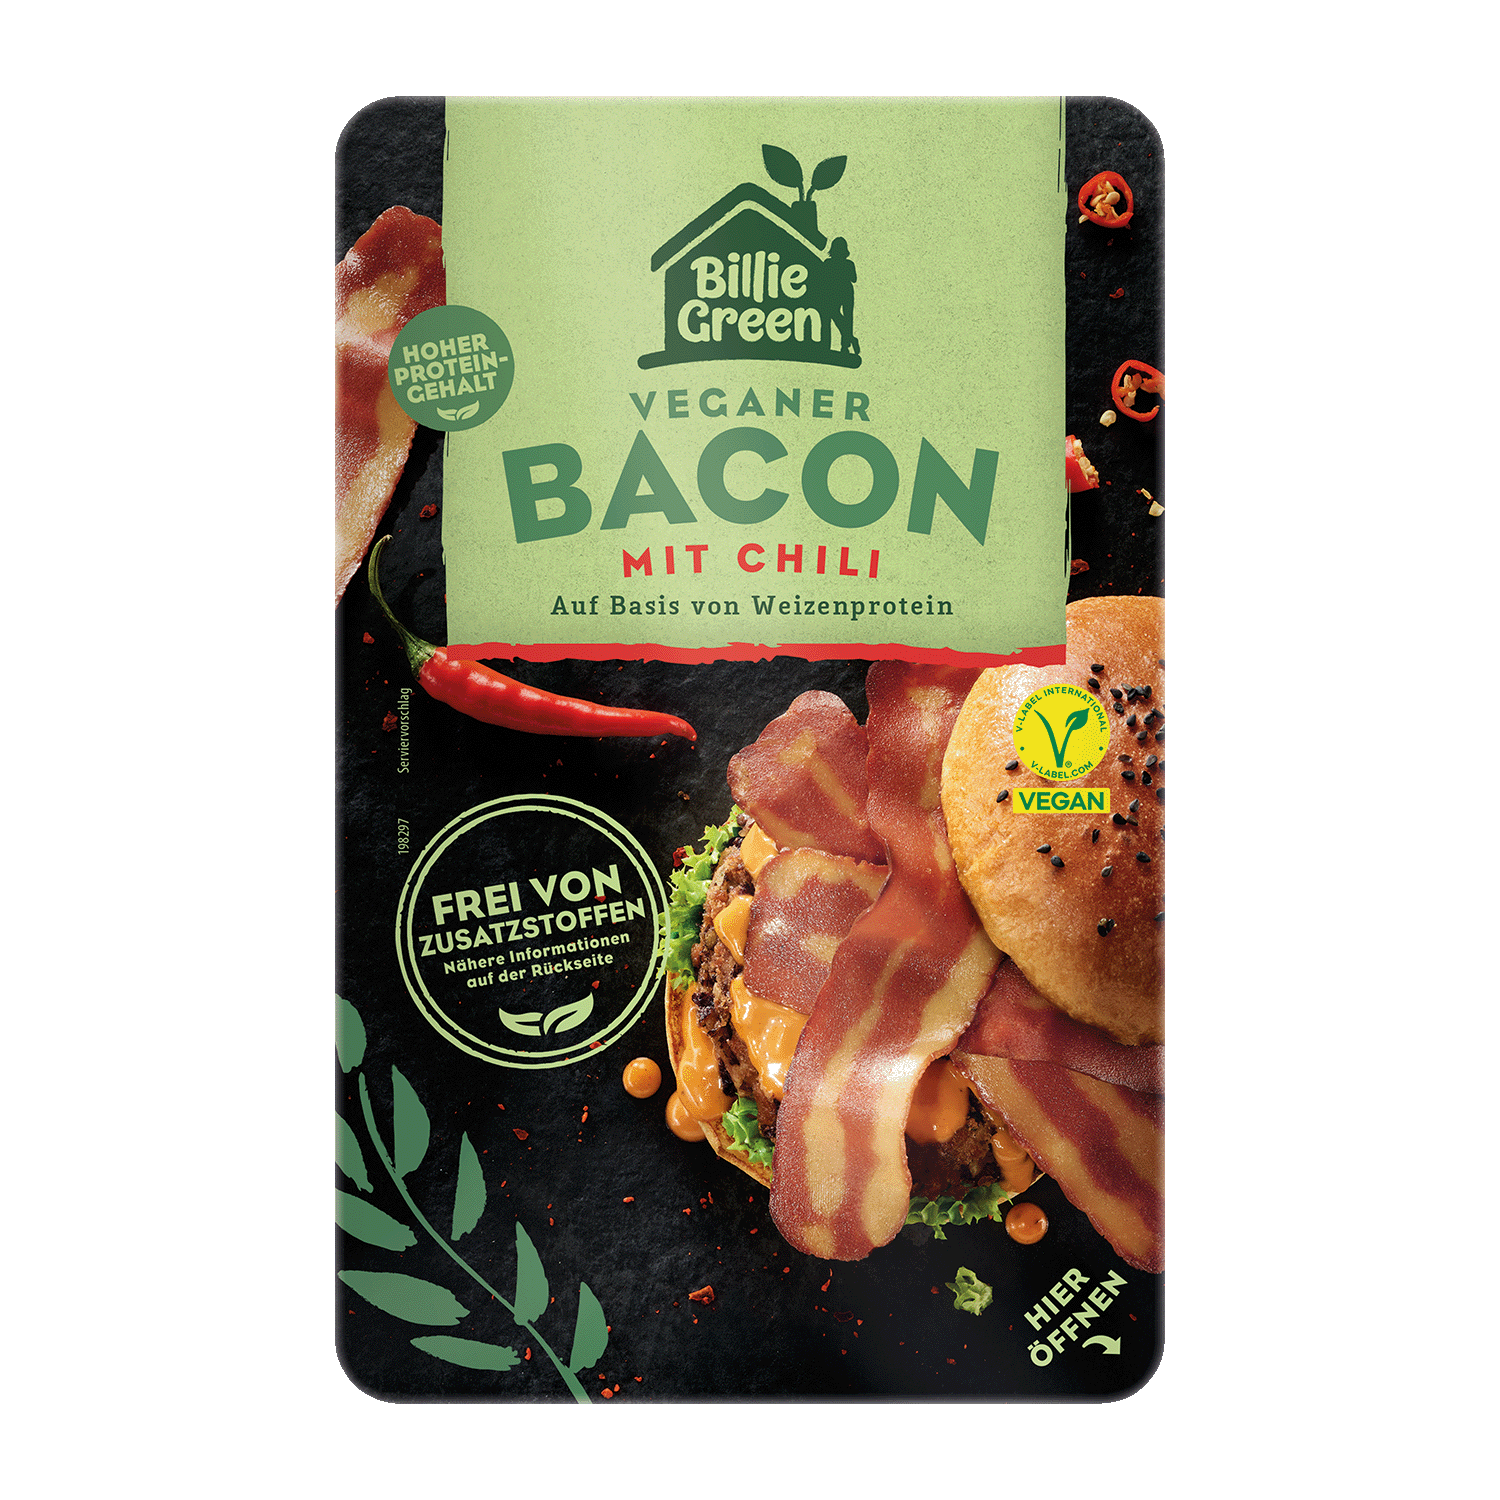 Veganer Bacon mit Chili, 90g